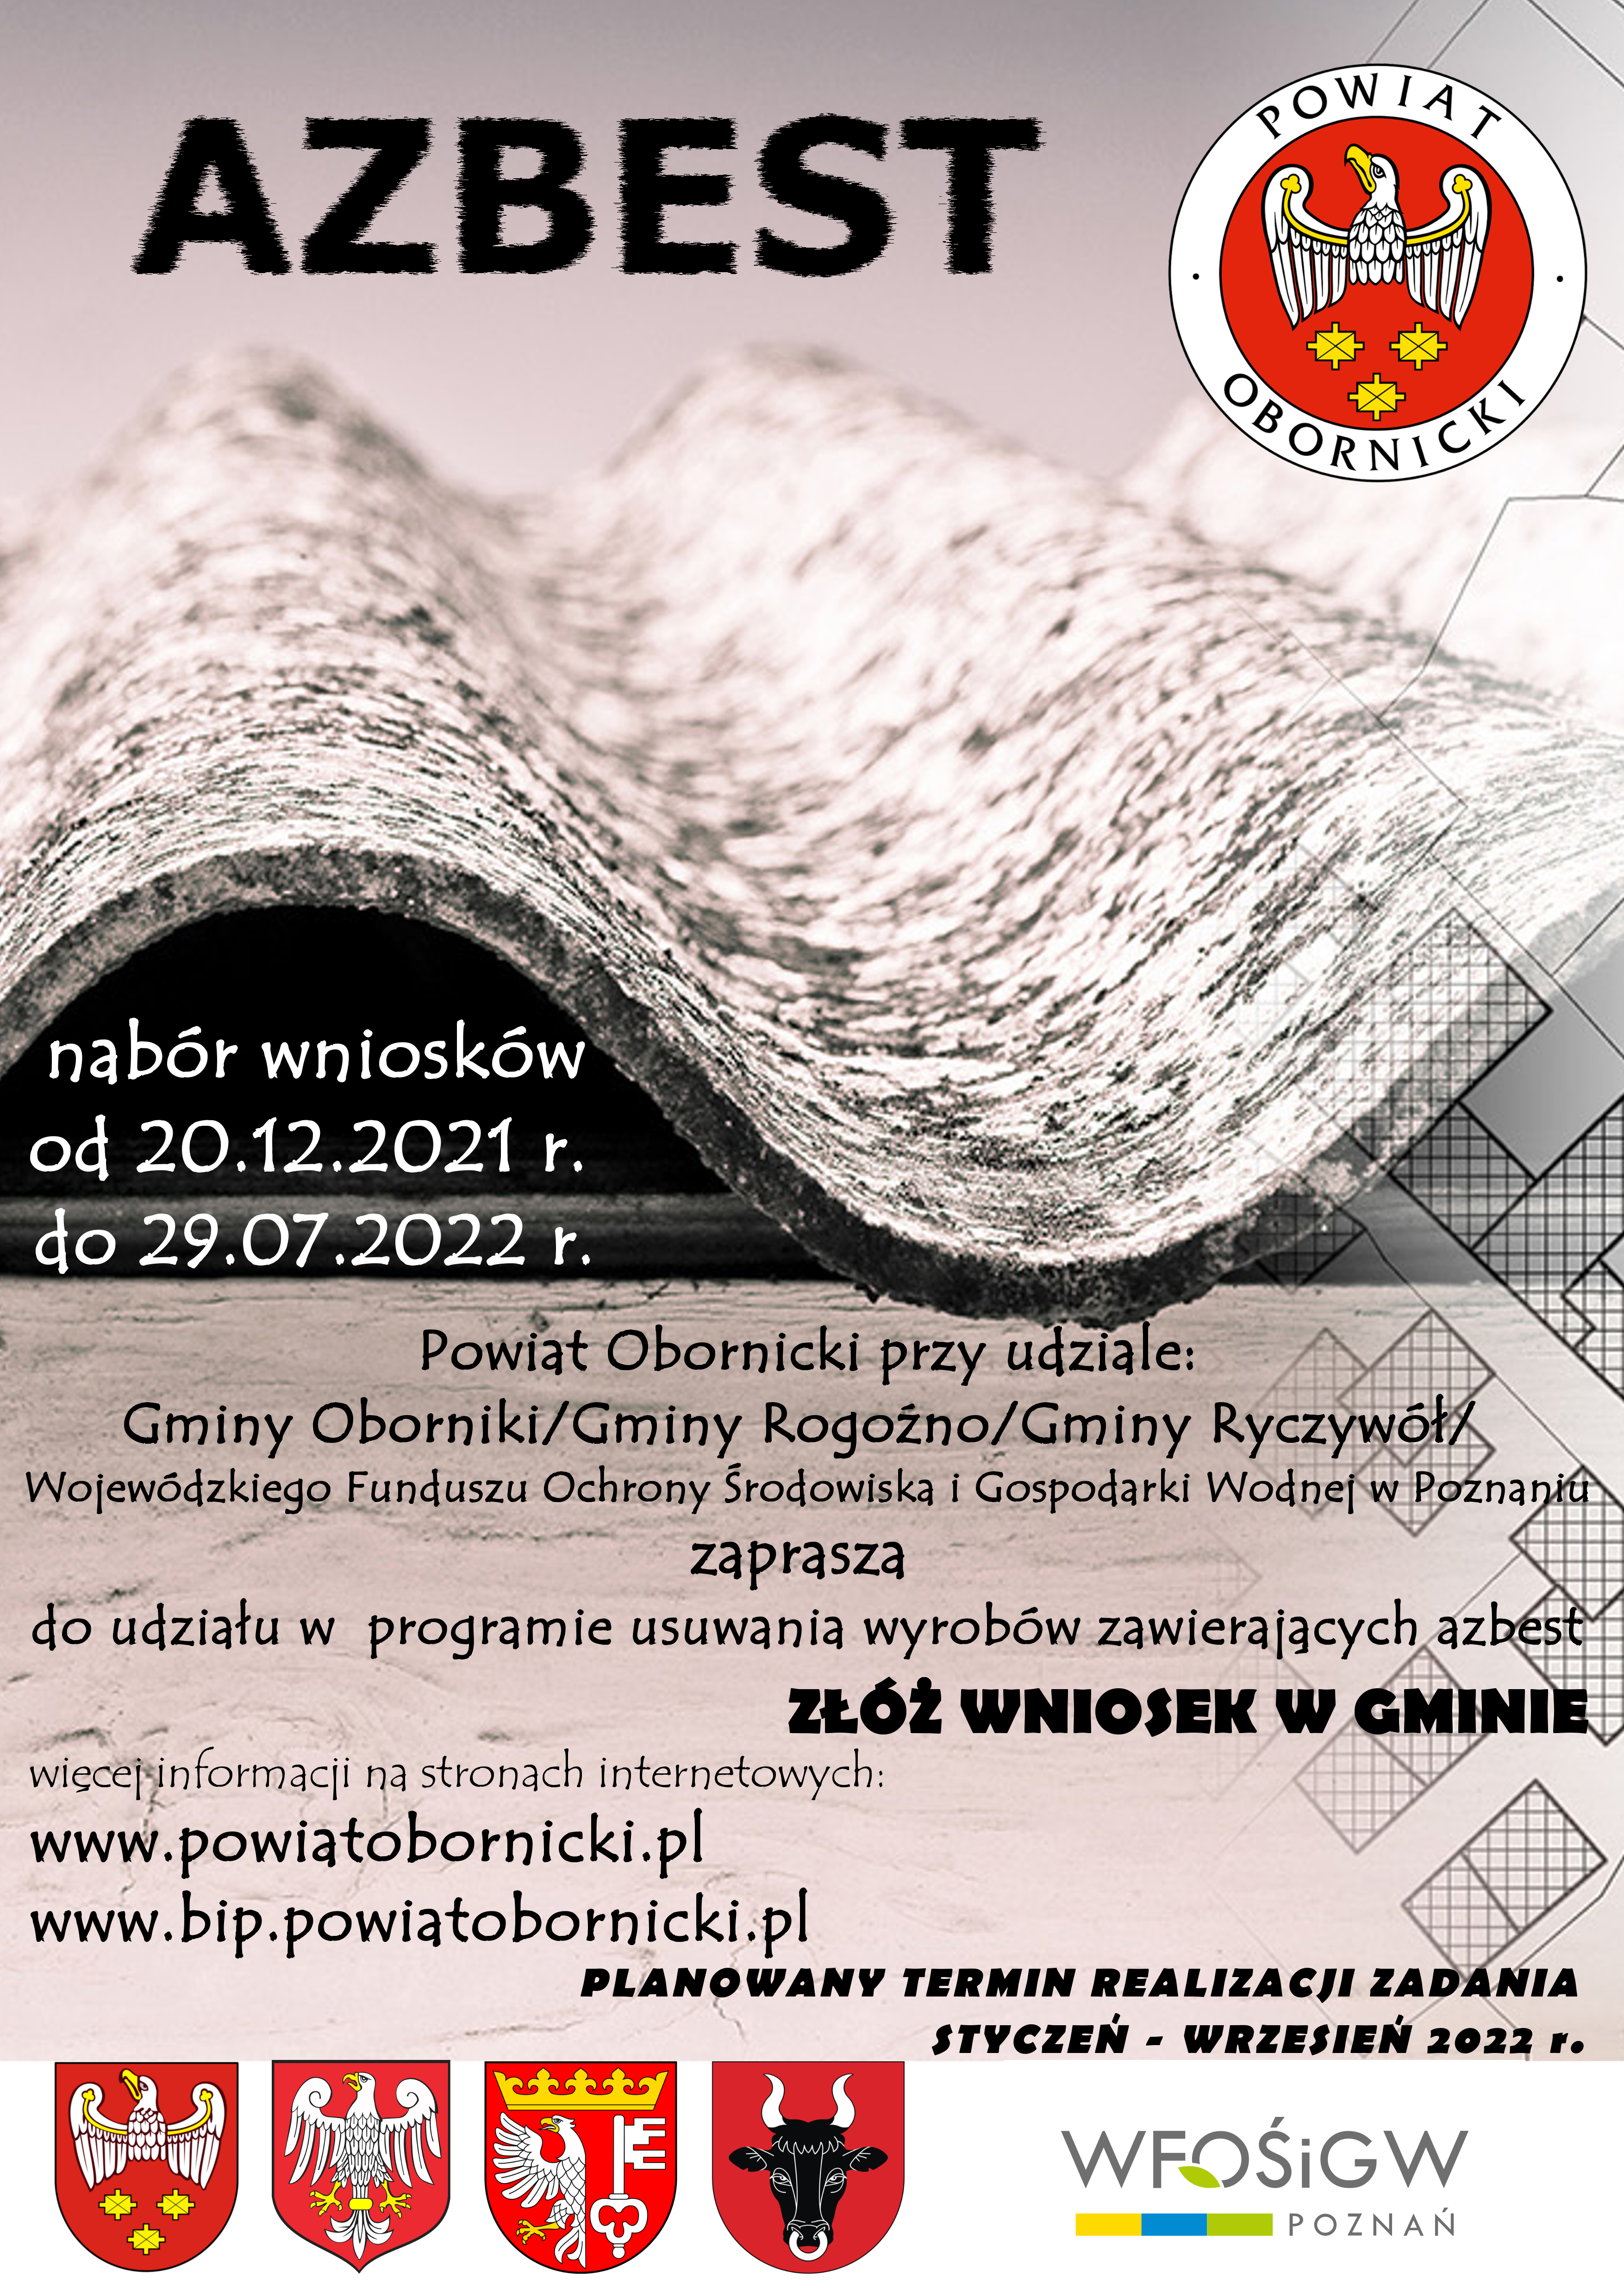 Plakat azbest nabór wniosków od 20.12.2021r do 29.07.2022 r  